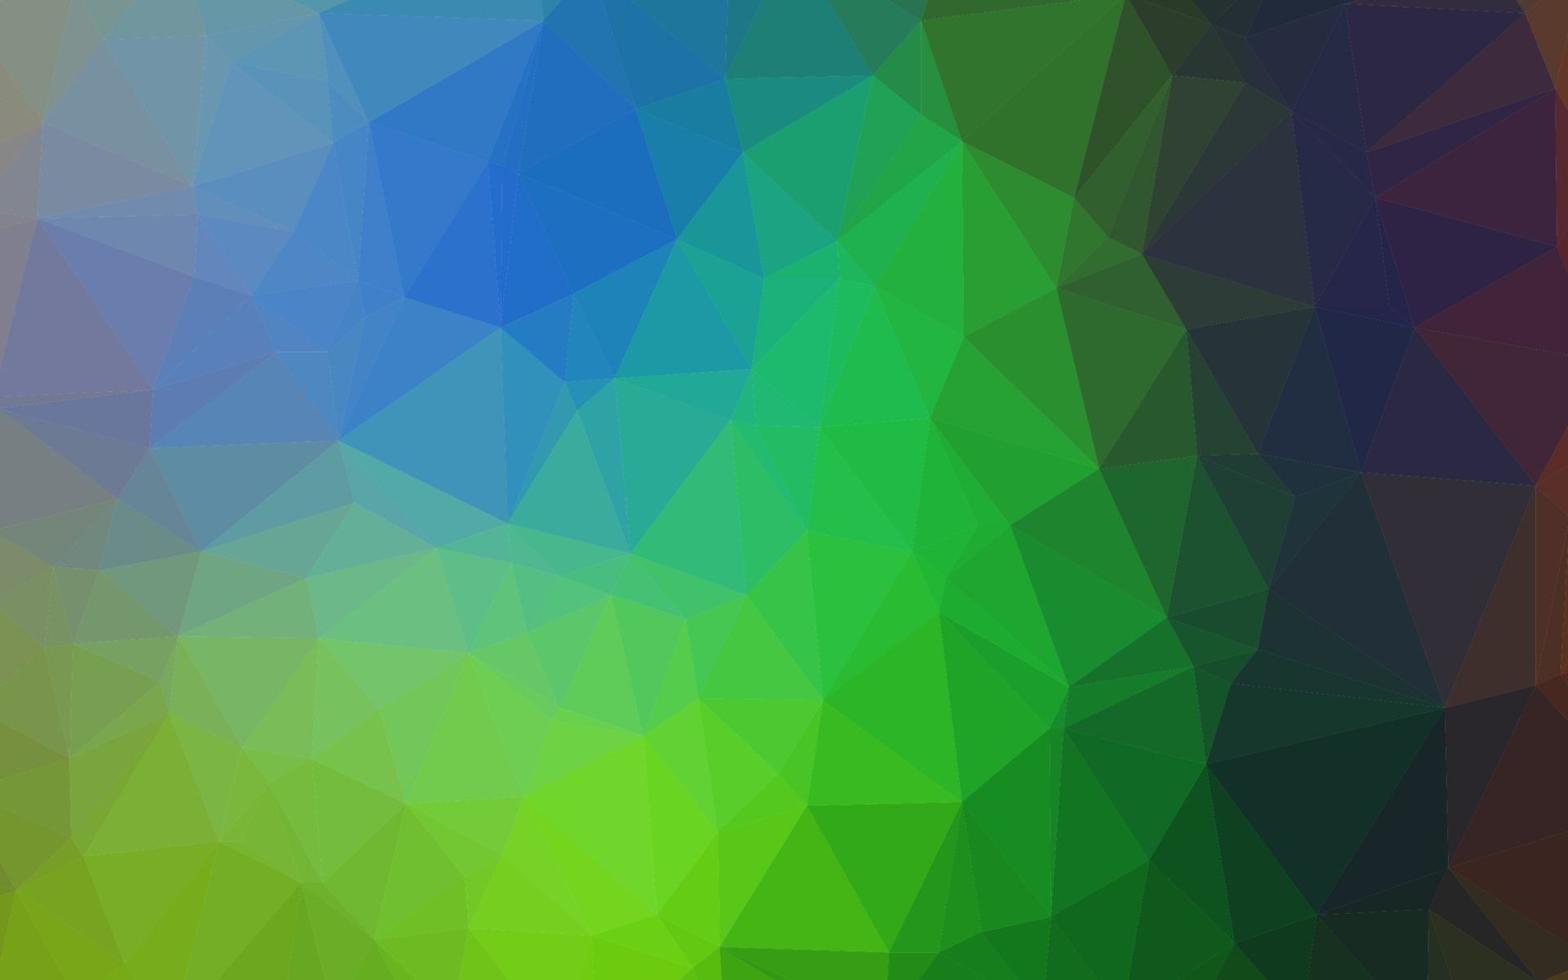 copertura poligonale astratta di vettore multicolore chiaro, arcobaleno.